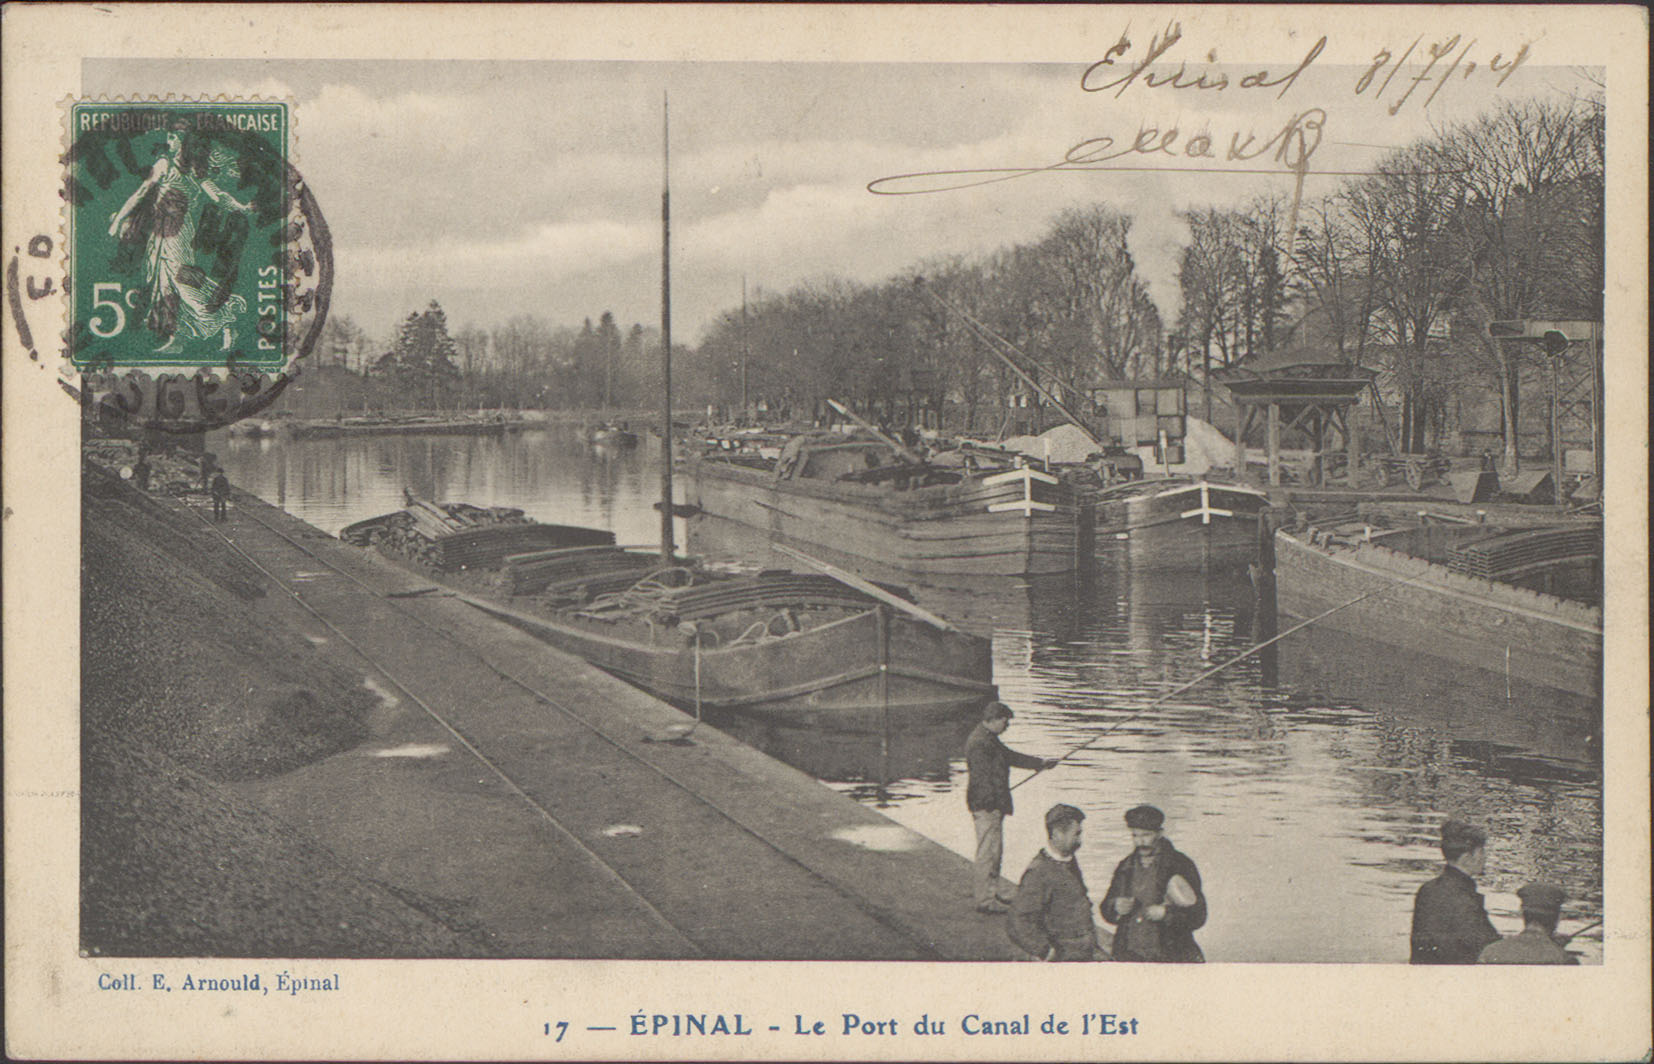 Contenu du Épinal, Le Port du Canal de l'Est